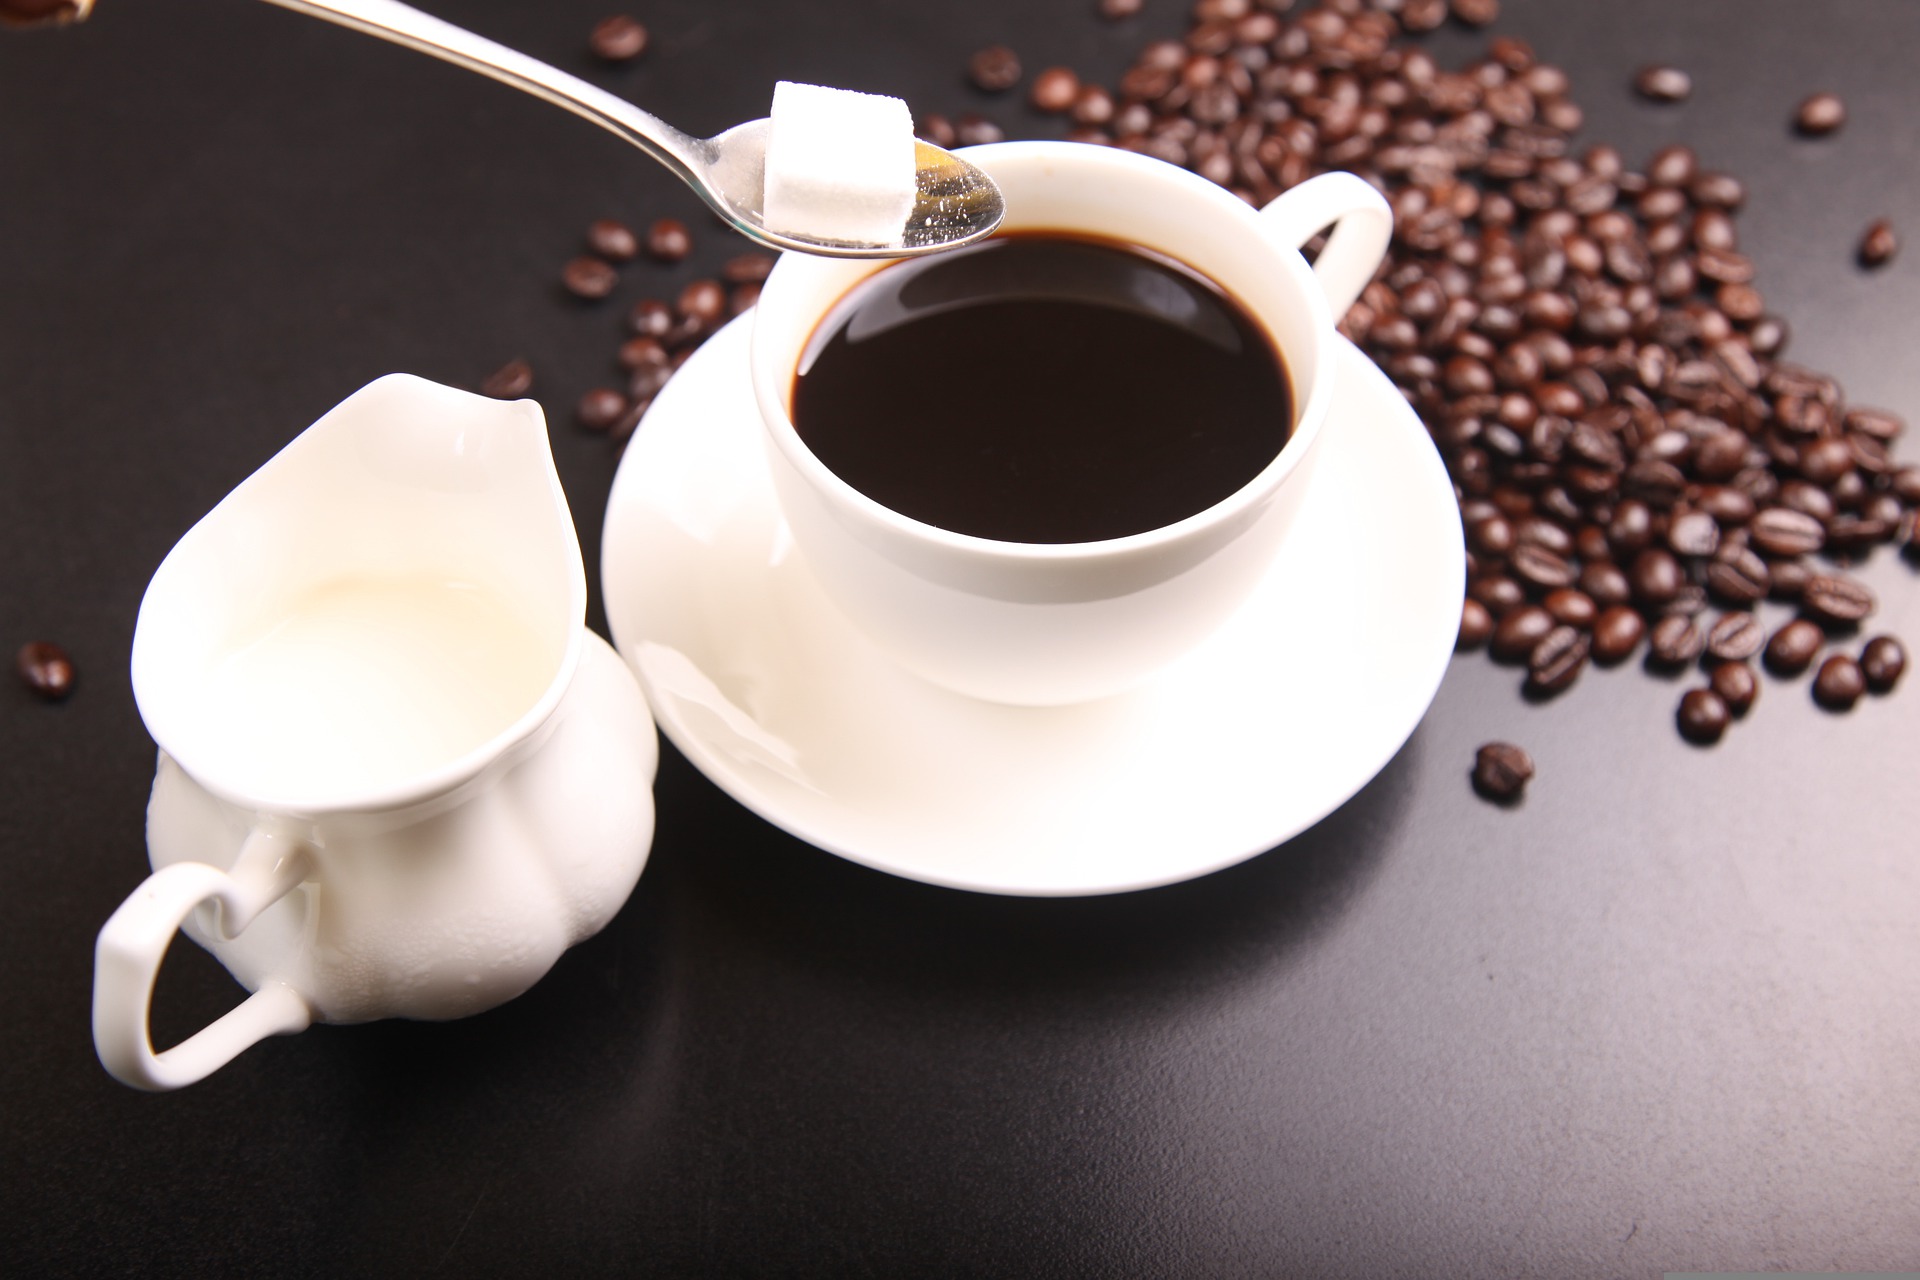 Eine weiße Tasse Kaffee. Ein weißes Kännchen mit Milch steht daneben. Mit einem Löffel wird ein Würfelzucker in den Kaffee gegeben. Auf dem Tisch sind Kaffeebohnen verstreut.